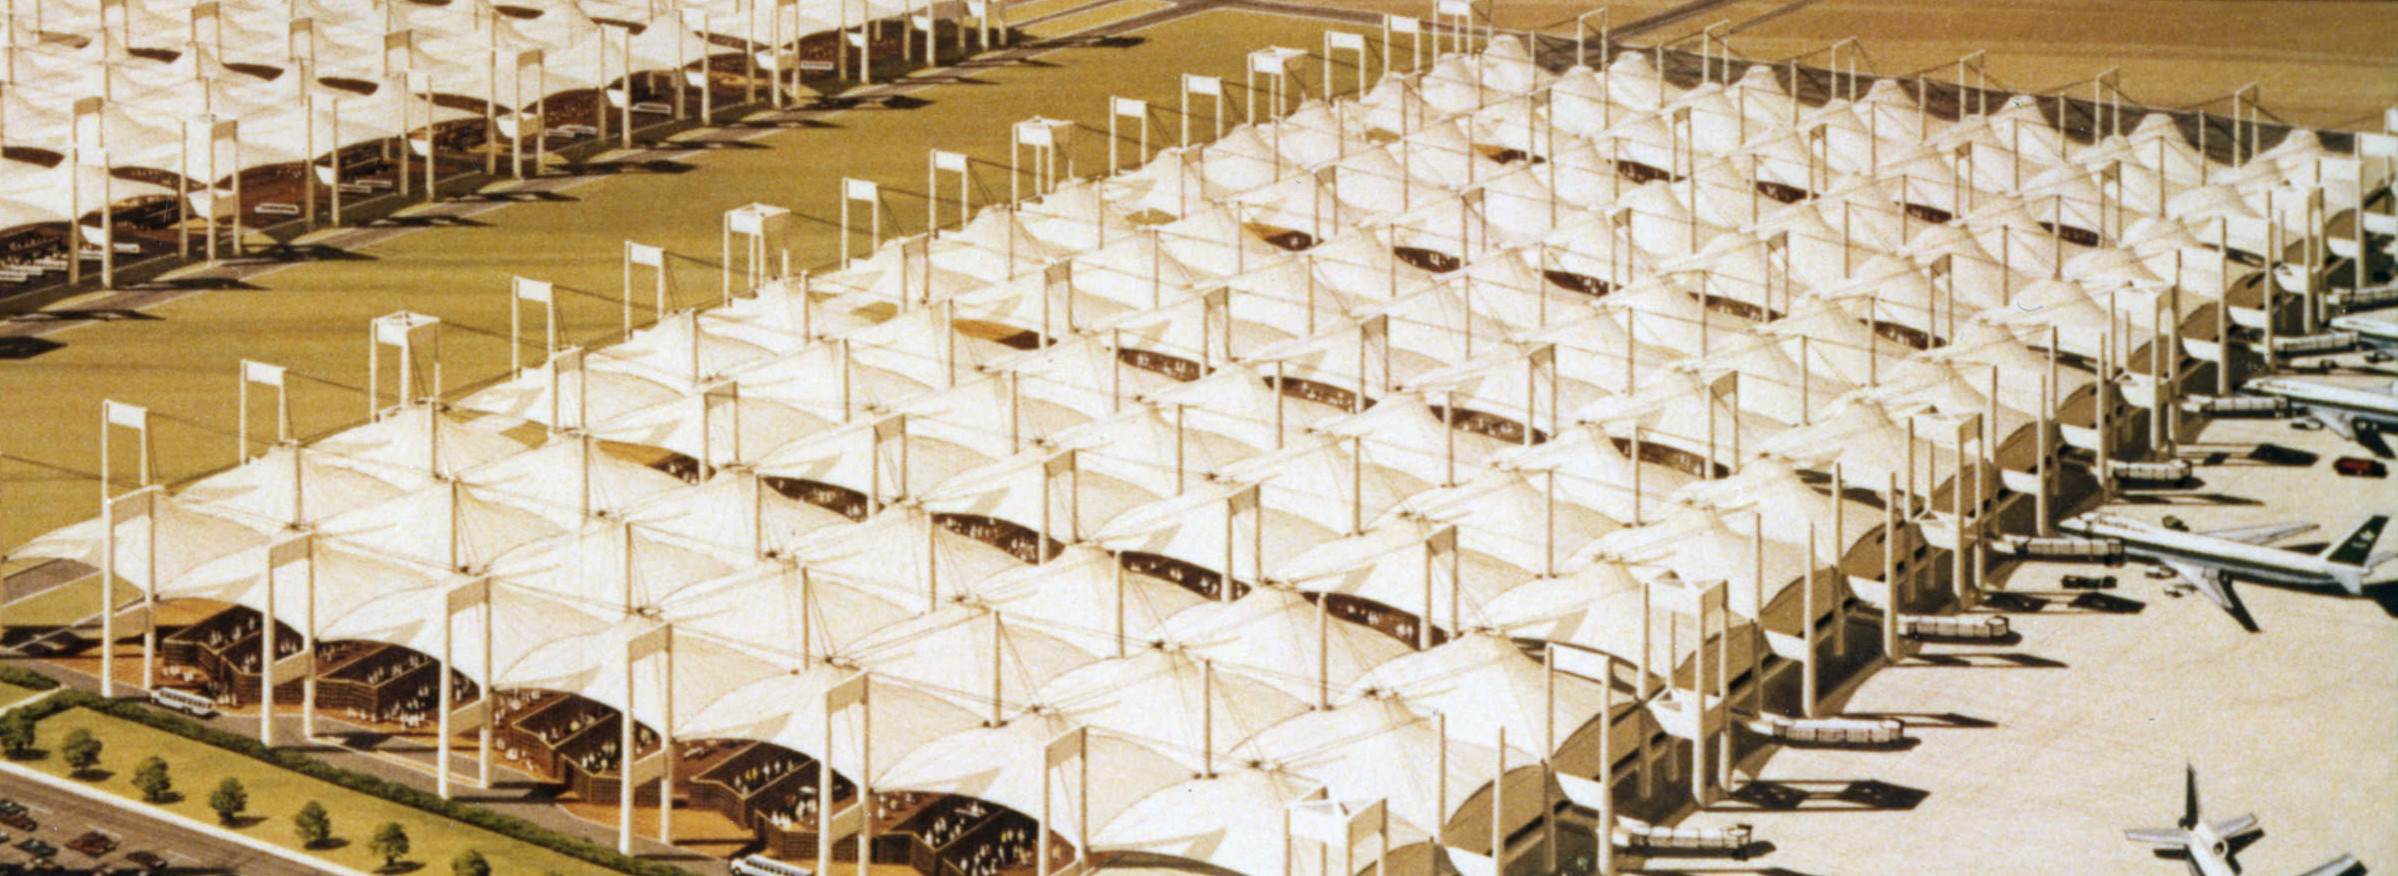 Аэропорт мекка. Международный аэропорт имени короля Абдулазиза в Джидде. Аэропорт Джидда Король Абдул-Азиз. Саудовская Аравия Джеддах аэропорт. Аэропорт в Джидде (Саудовская Аравия, 1980 г..